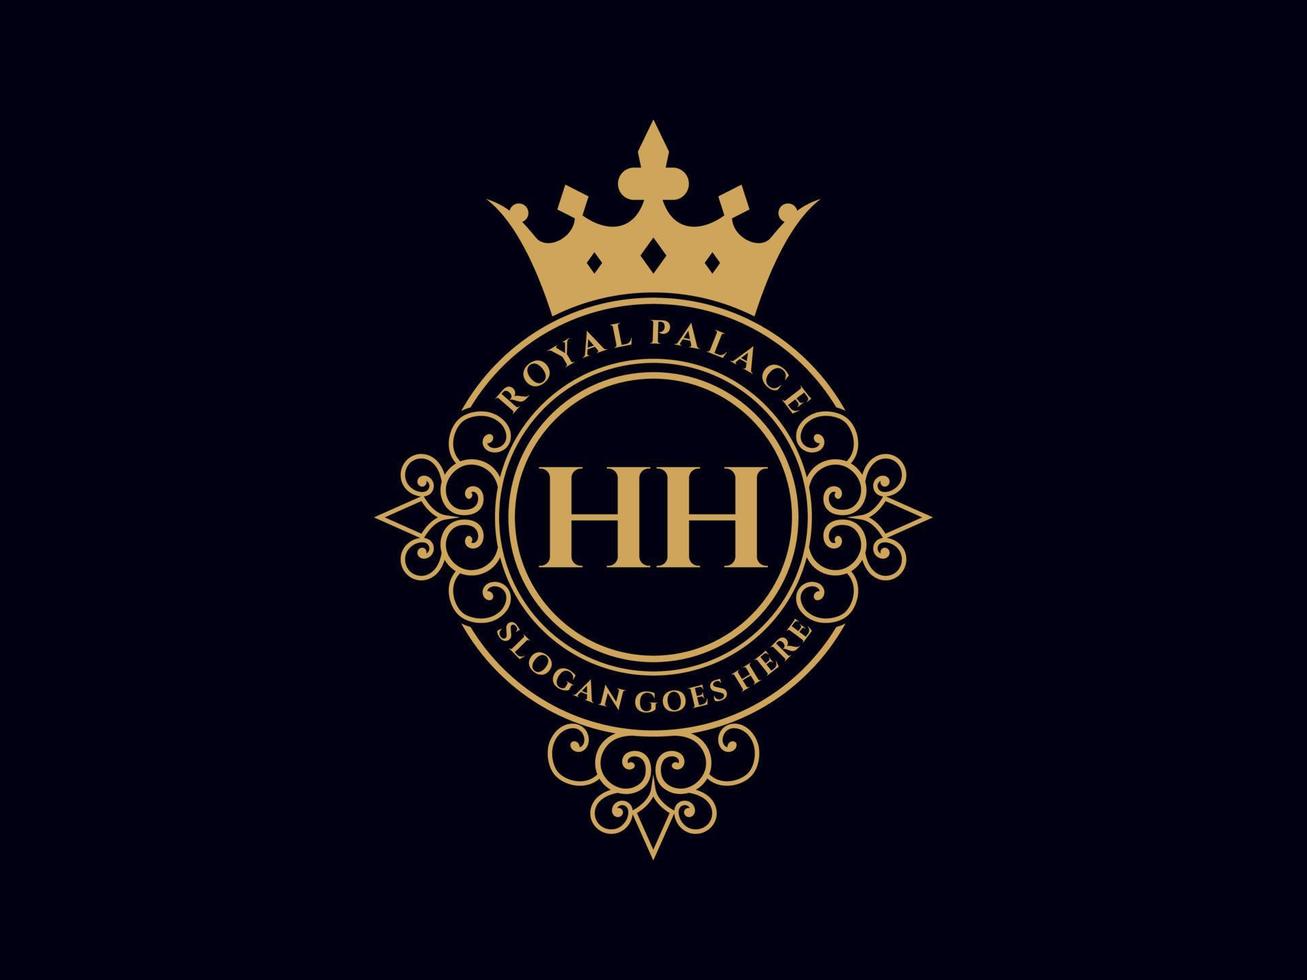 lettre hh logo victorien de luxe royal antique avec cadre ornemental. vecteur